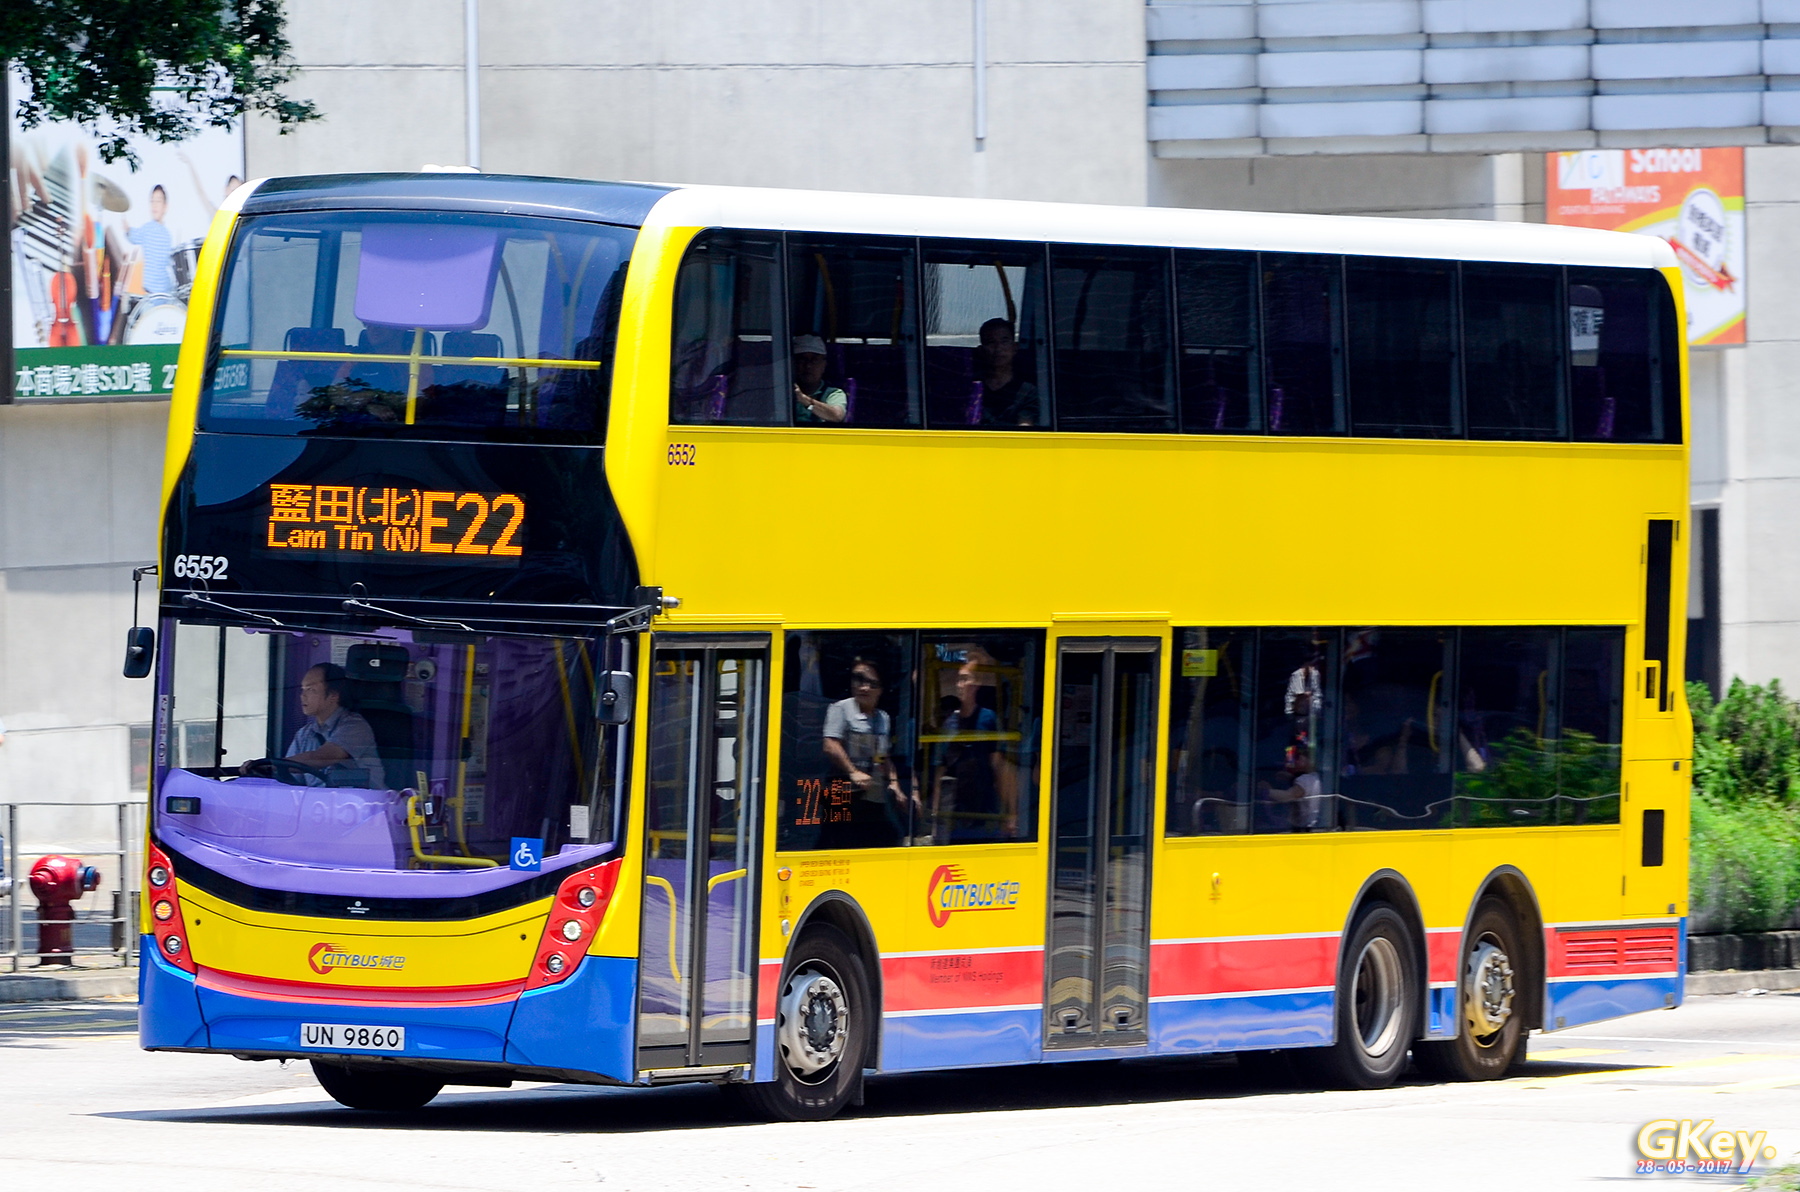 無聊影70K - 巴士攝影作品貼圖區 (B3) - hkitalk.net 香港交通資訊網 - Powered by Discuz!